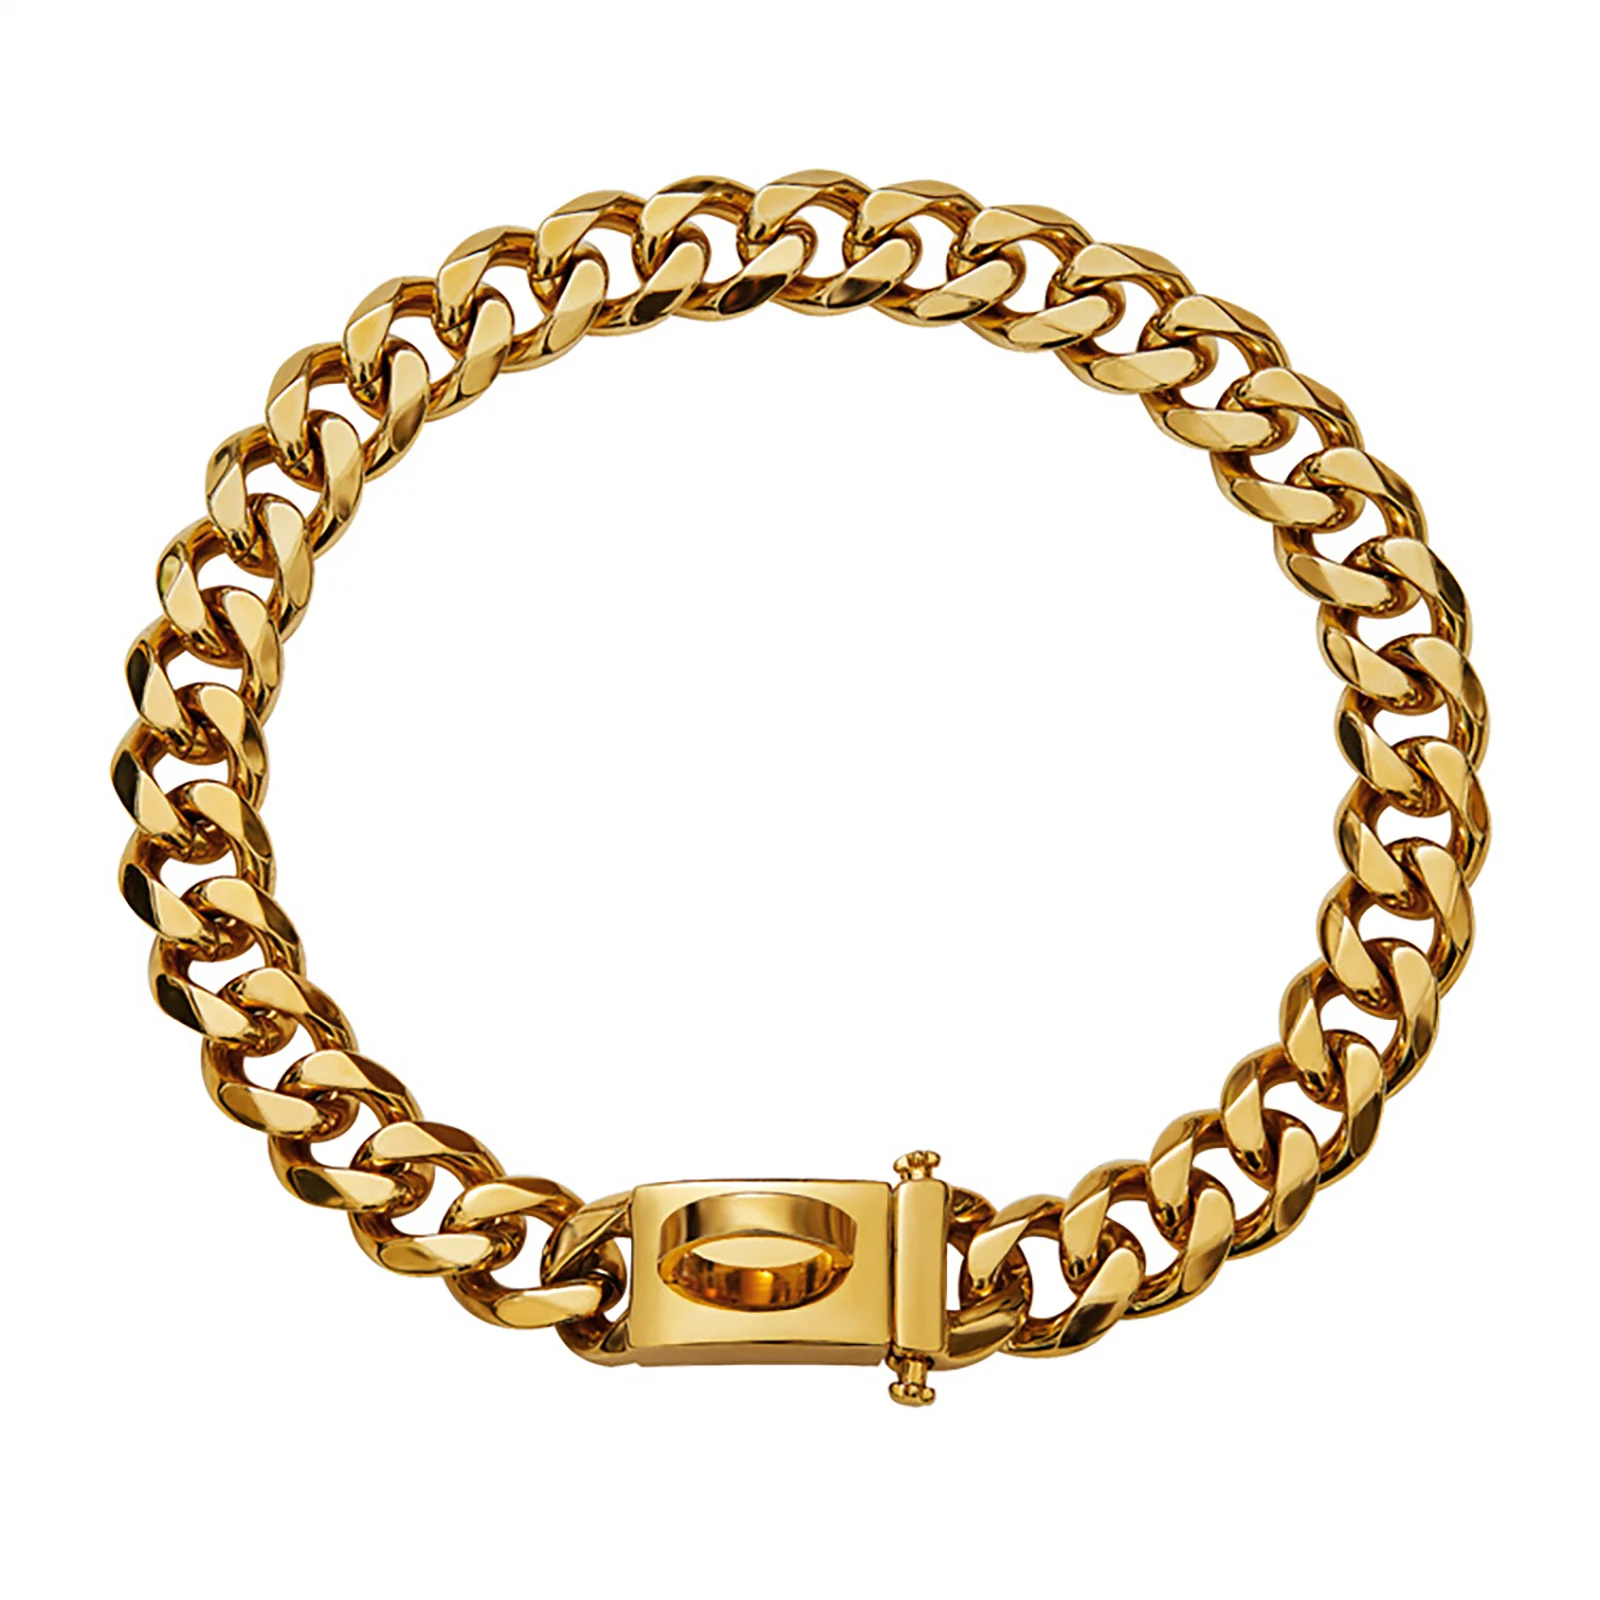 

Золотистый ошейник для собак, цепочка 15 мм из кубинской цепи с металлической пряжкой и D-образным кольцом, золотистая цепь для щенка, костюма